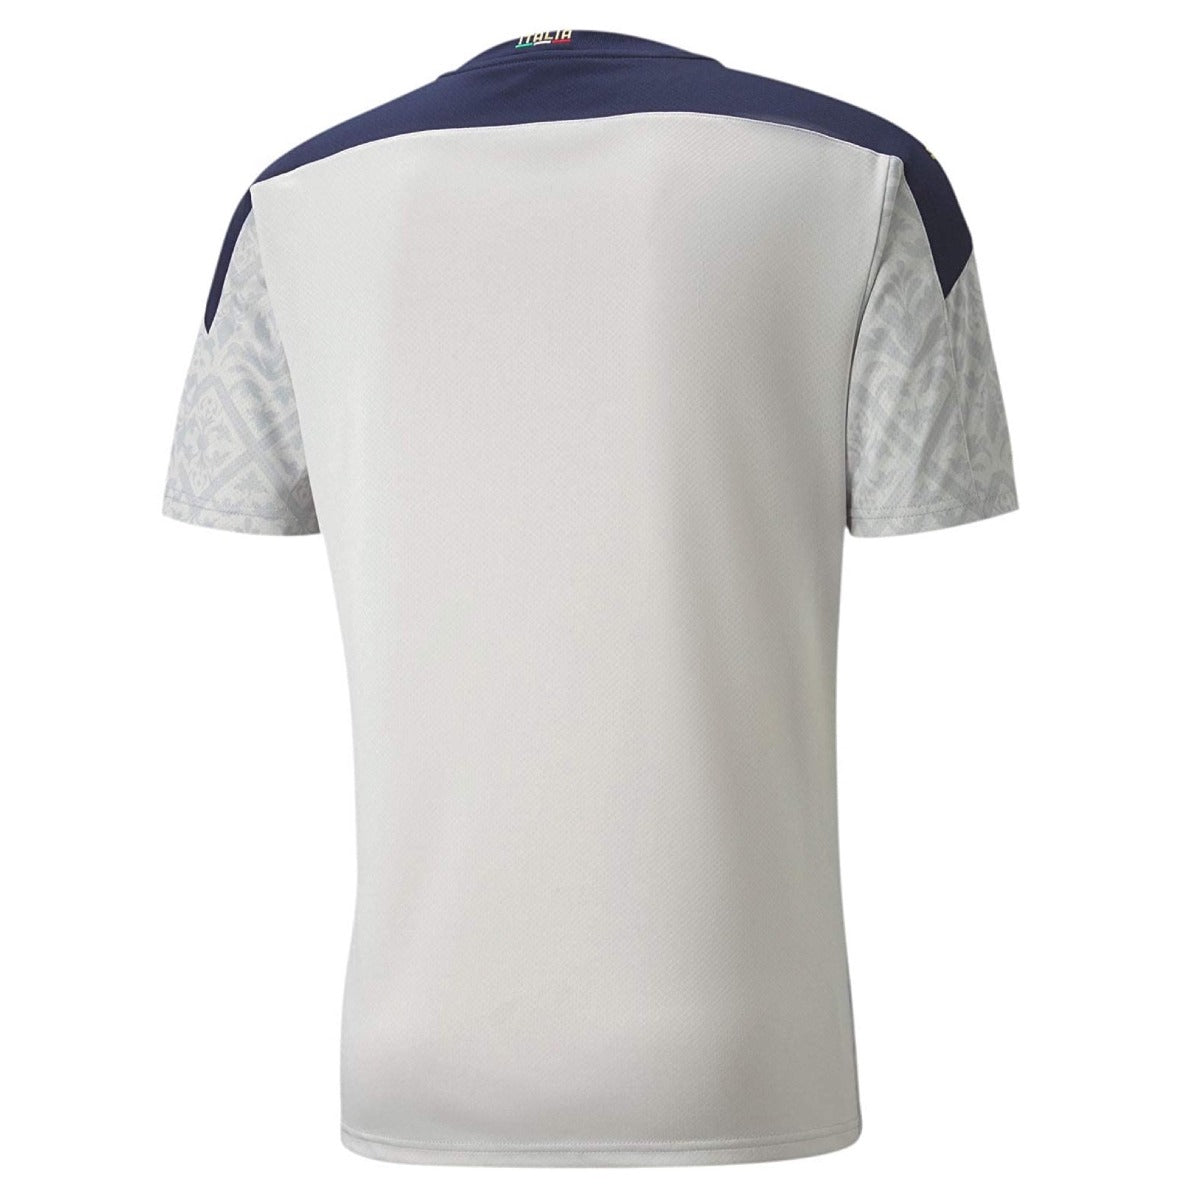 Puma 2021 Italy Goalkeeper Jersey - Gray (Back)